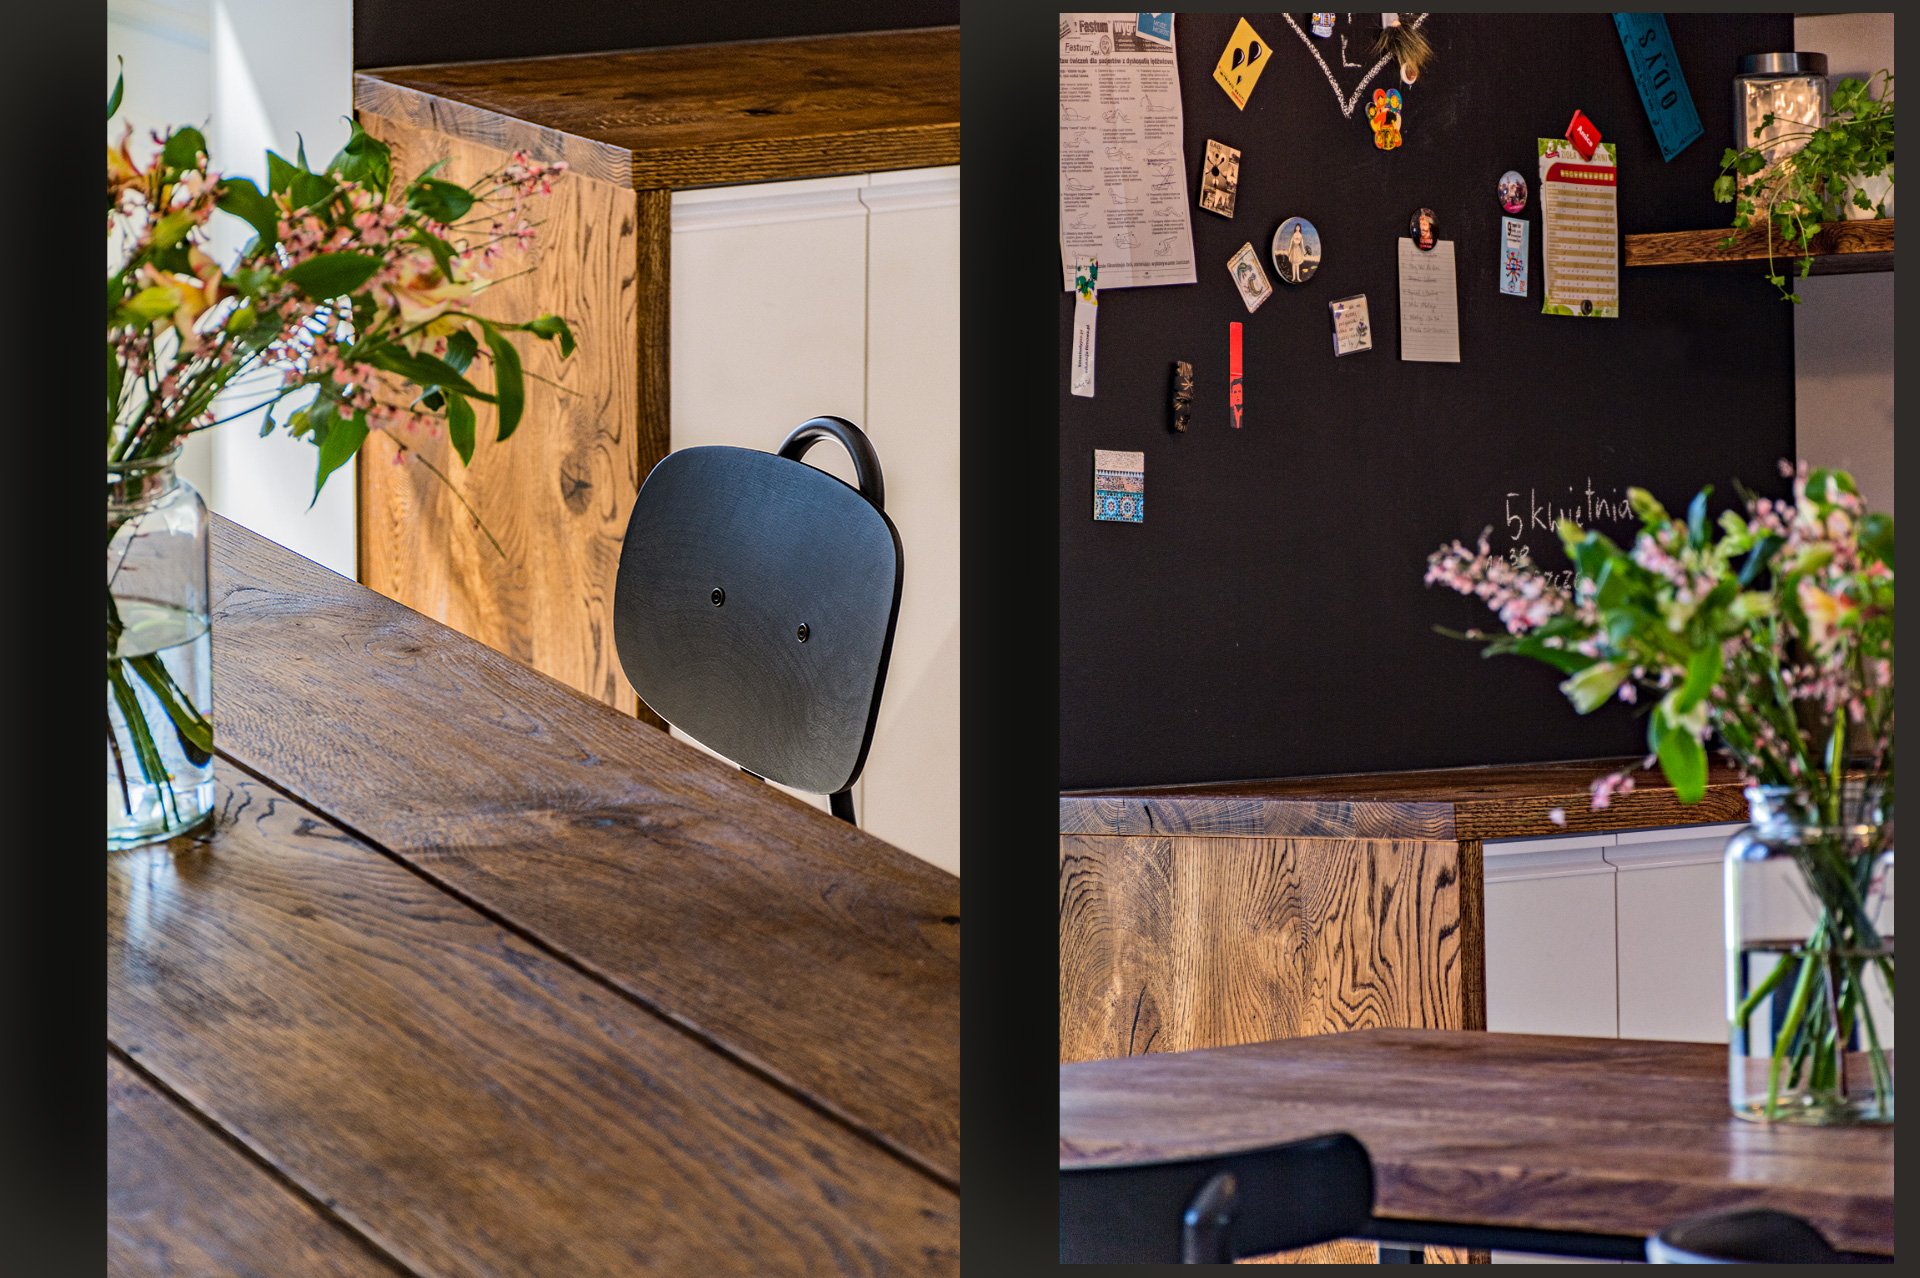 Kuchenny stół na wymiar nosi – podobnie jak reszta blatów – postarzane deski. Po prawej – rodzinny portal społecznościowy – czyli duży obszar pokryty farbą tablicową.